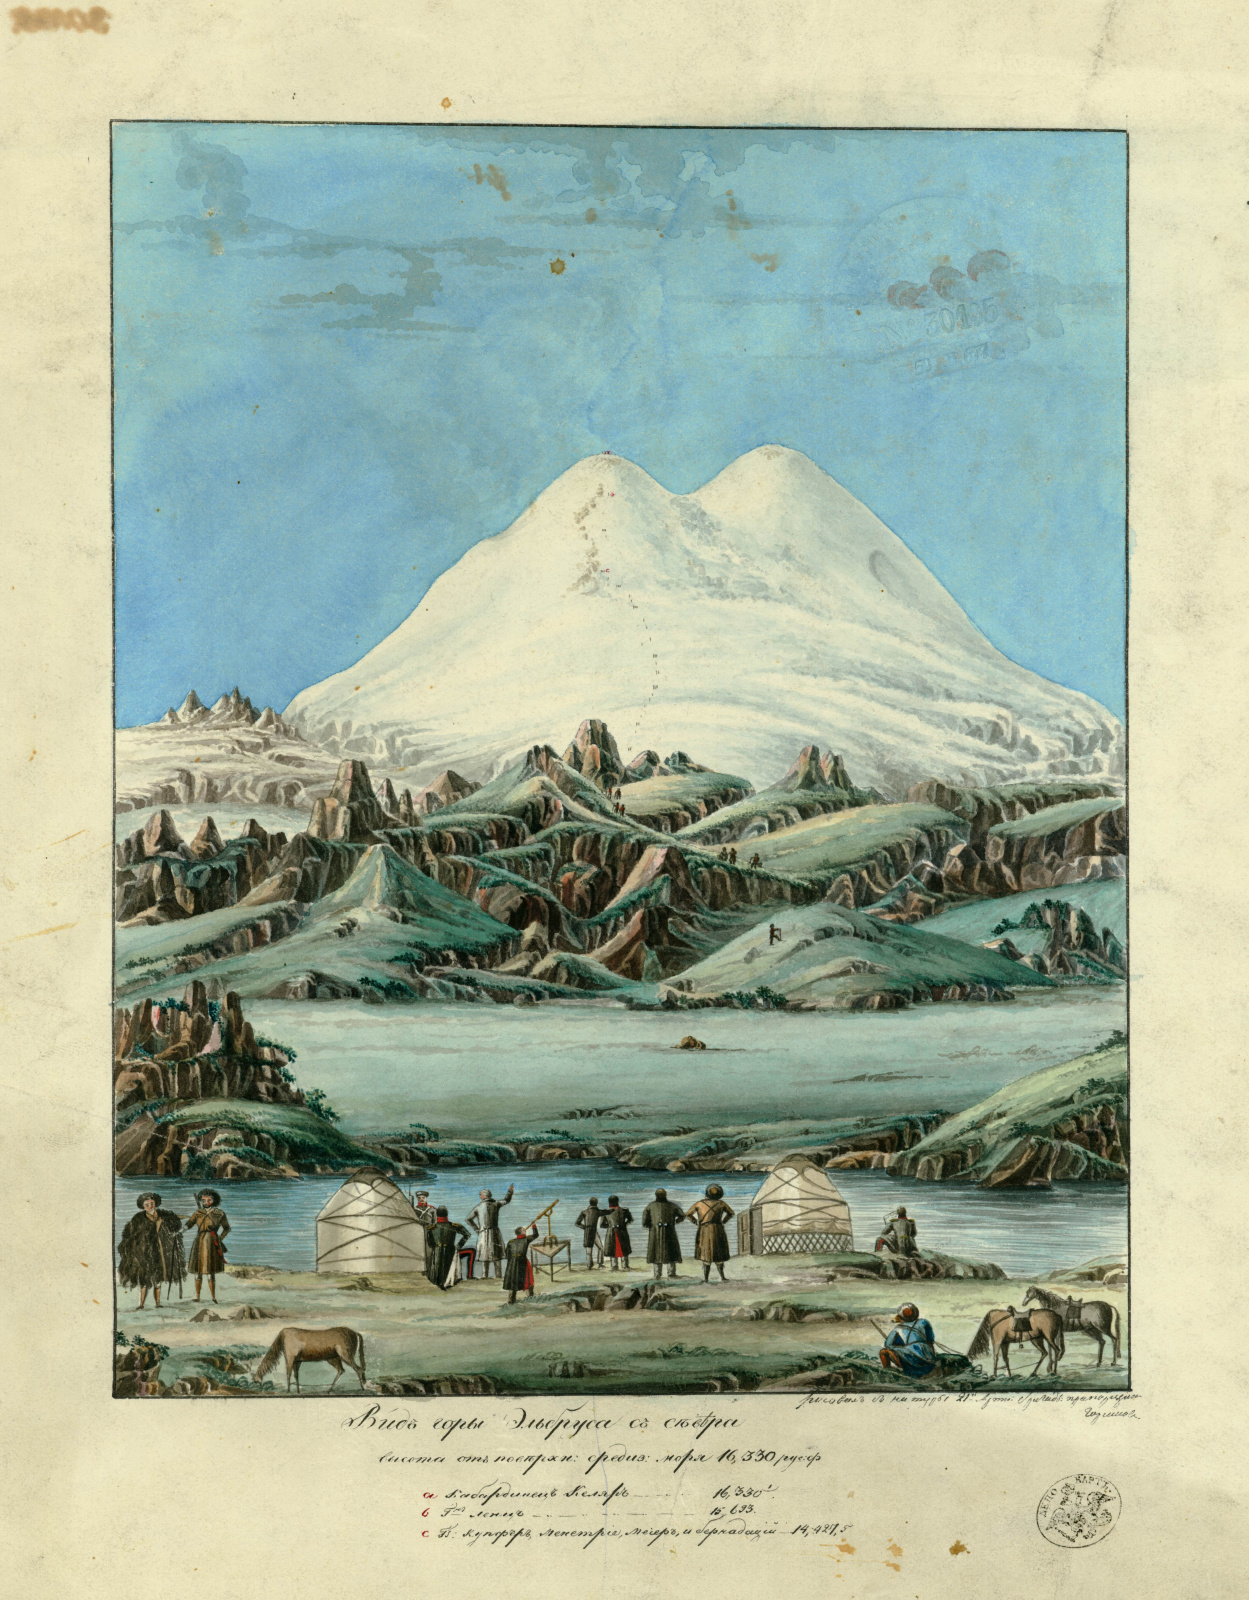 Картина Прапорщика Голикова, участника экспедиции генерала Эммануэля к Эльбрусу 1829 года